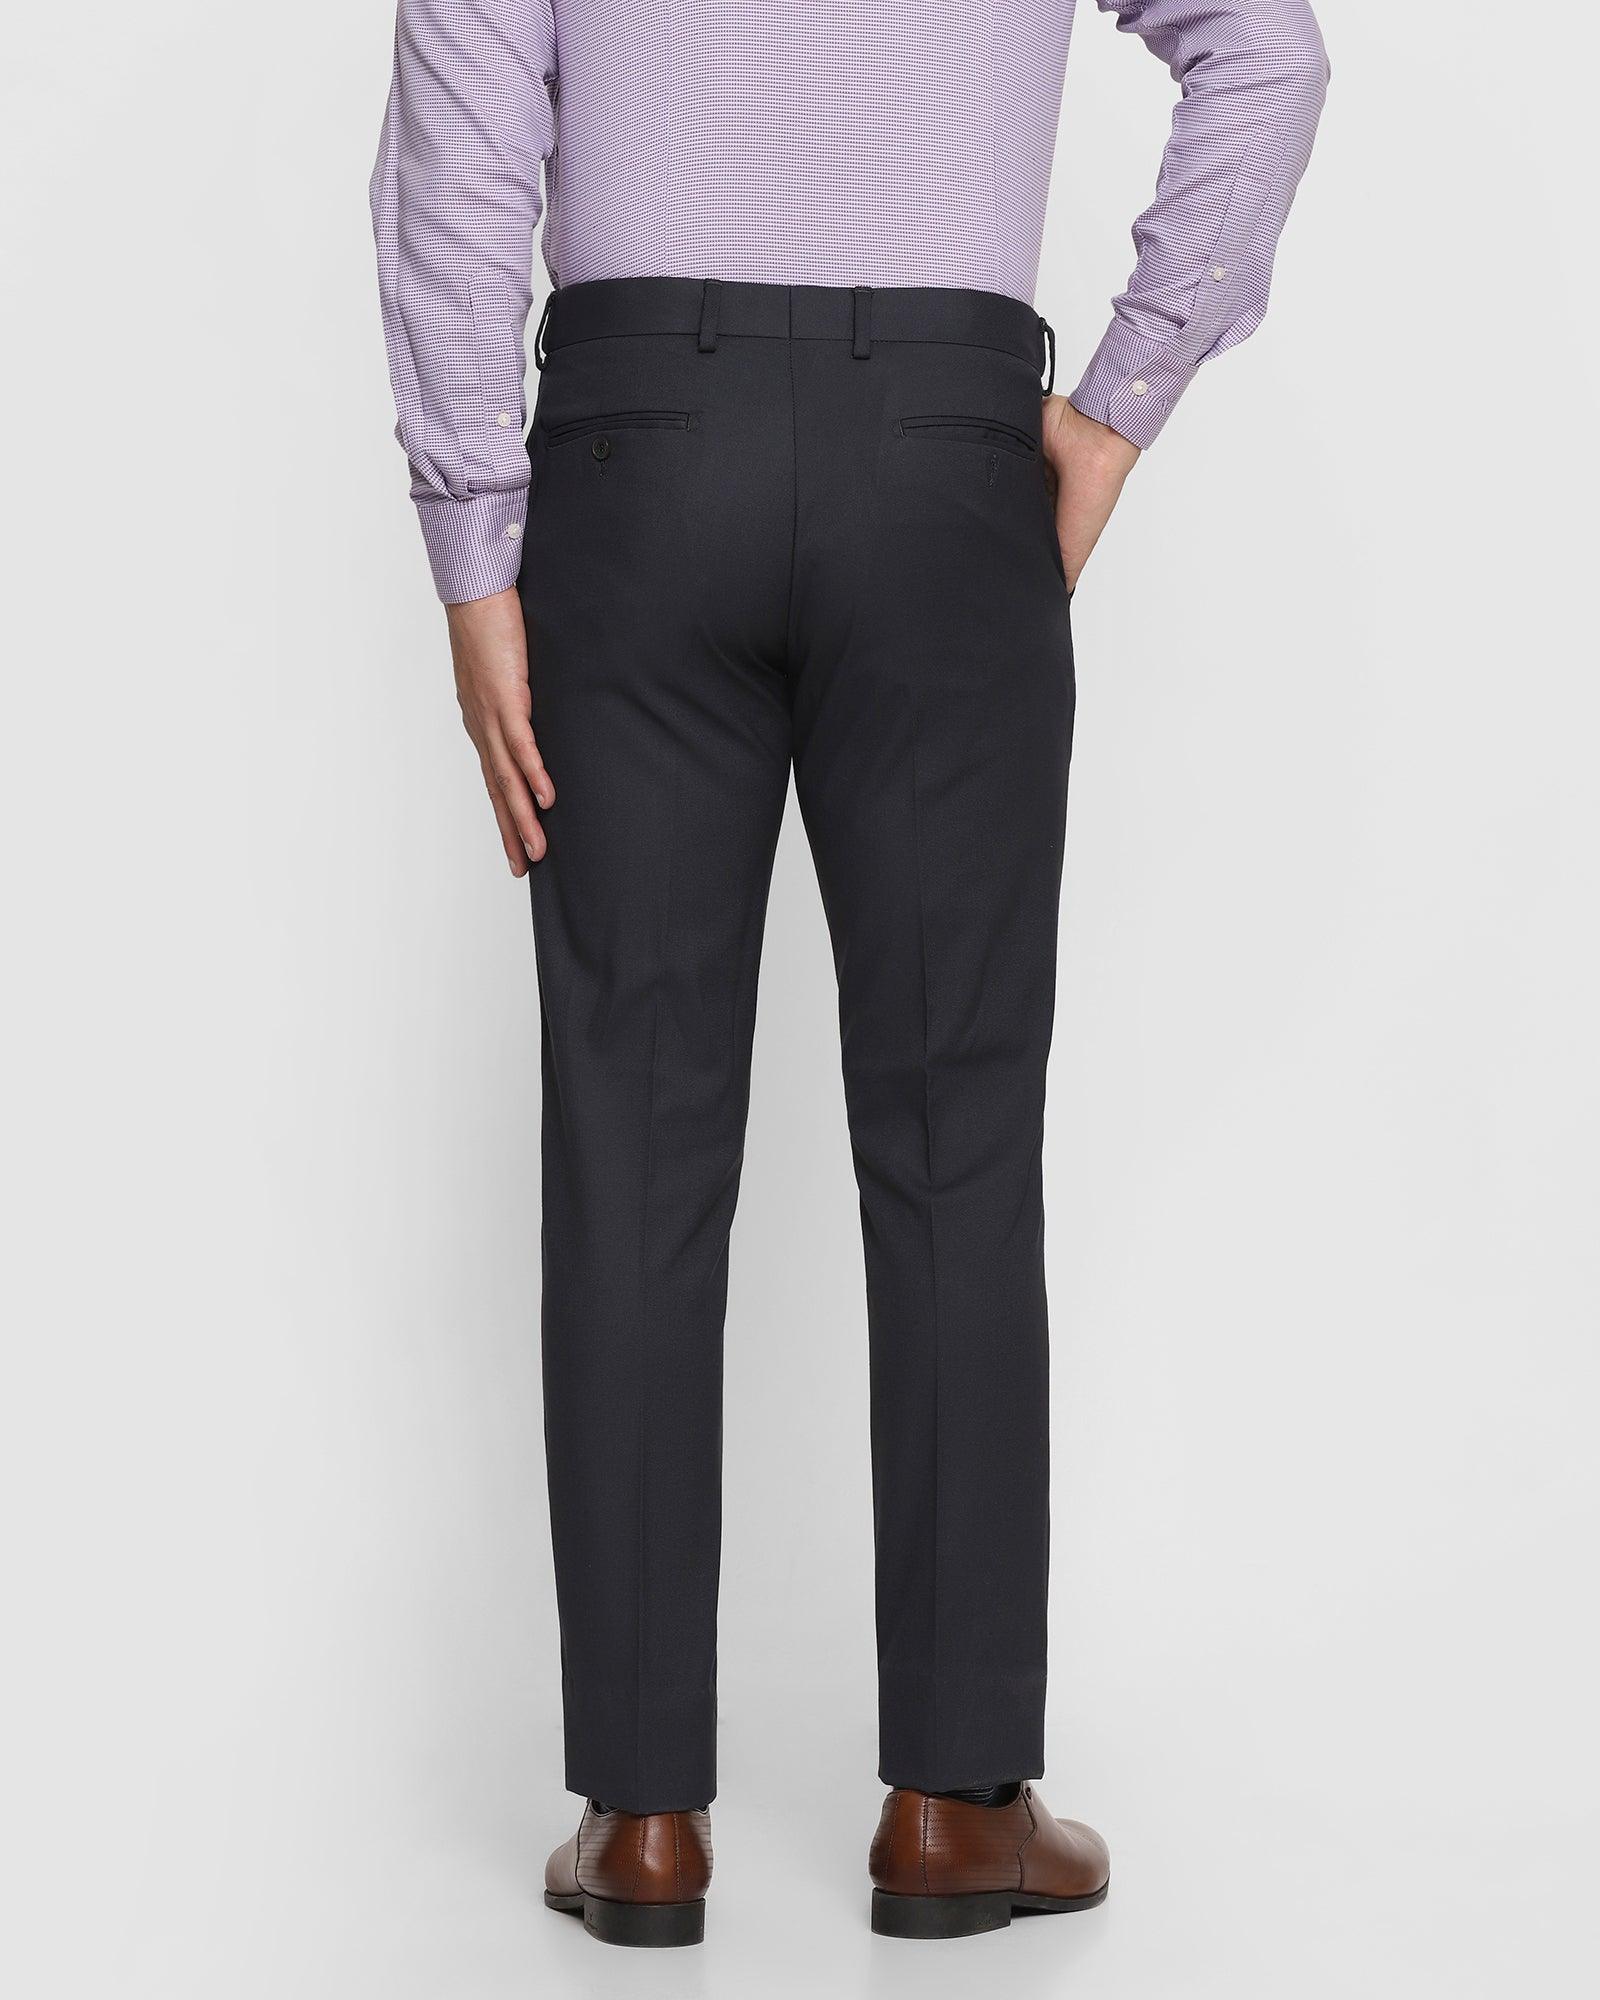 Slim Fit B-91 Formal Dark Grey Textured Trouser - Cairon